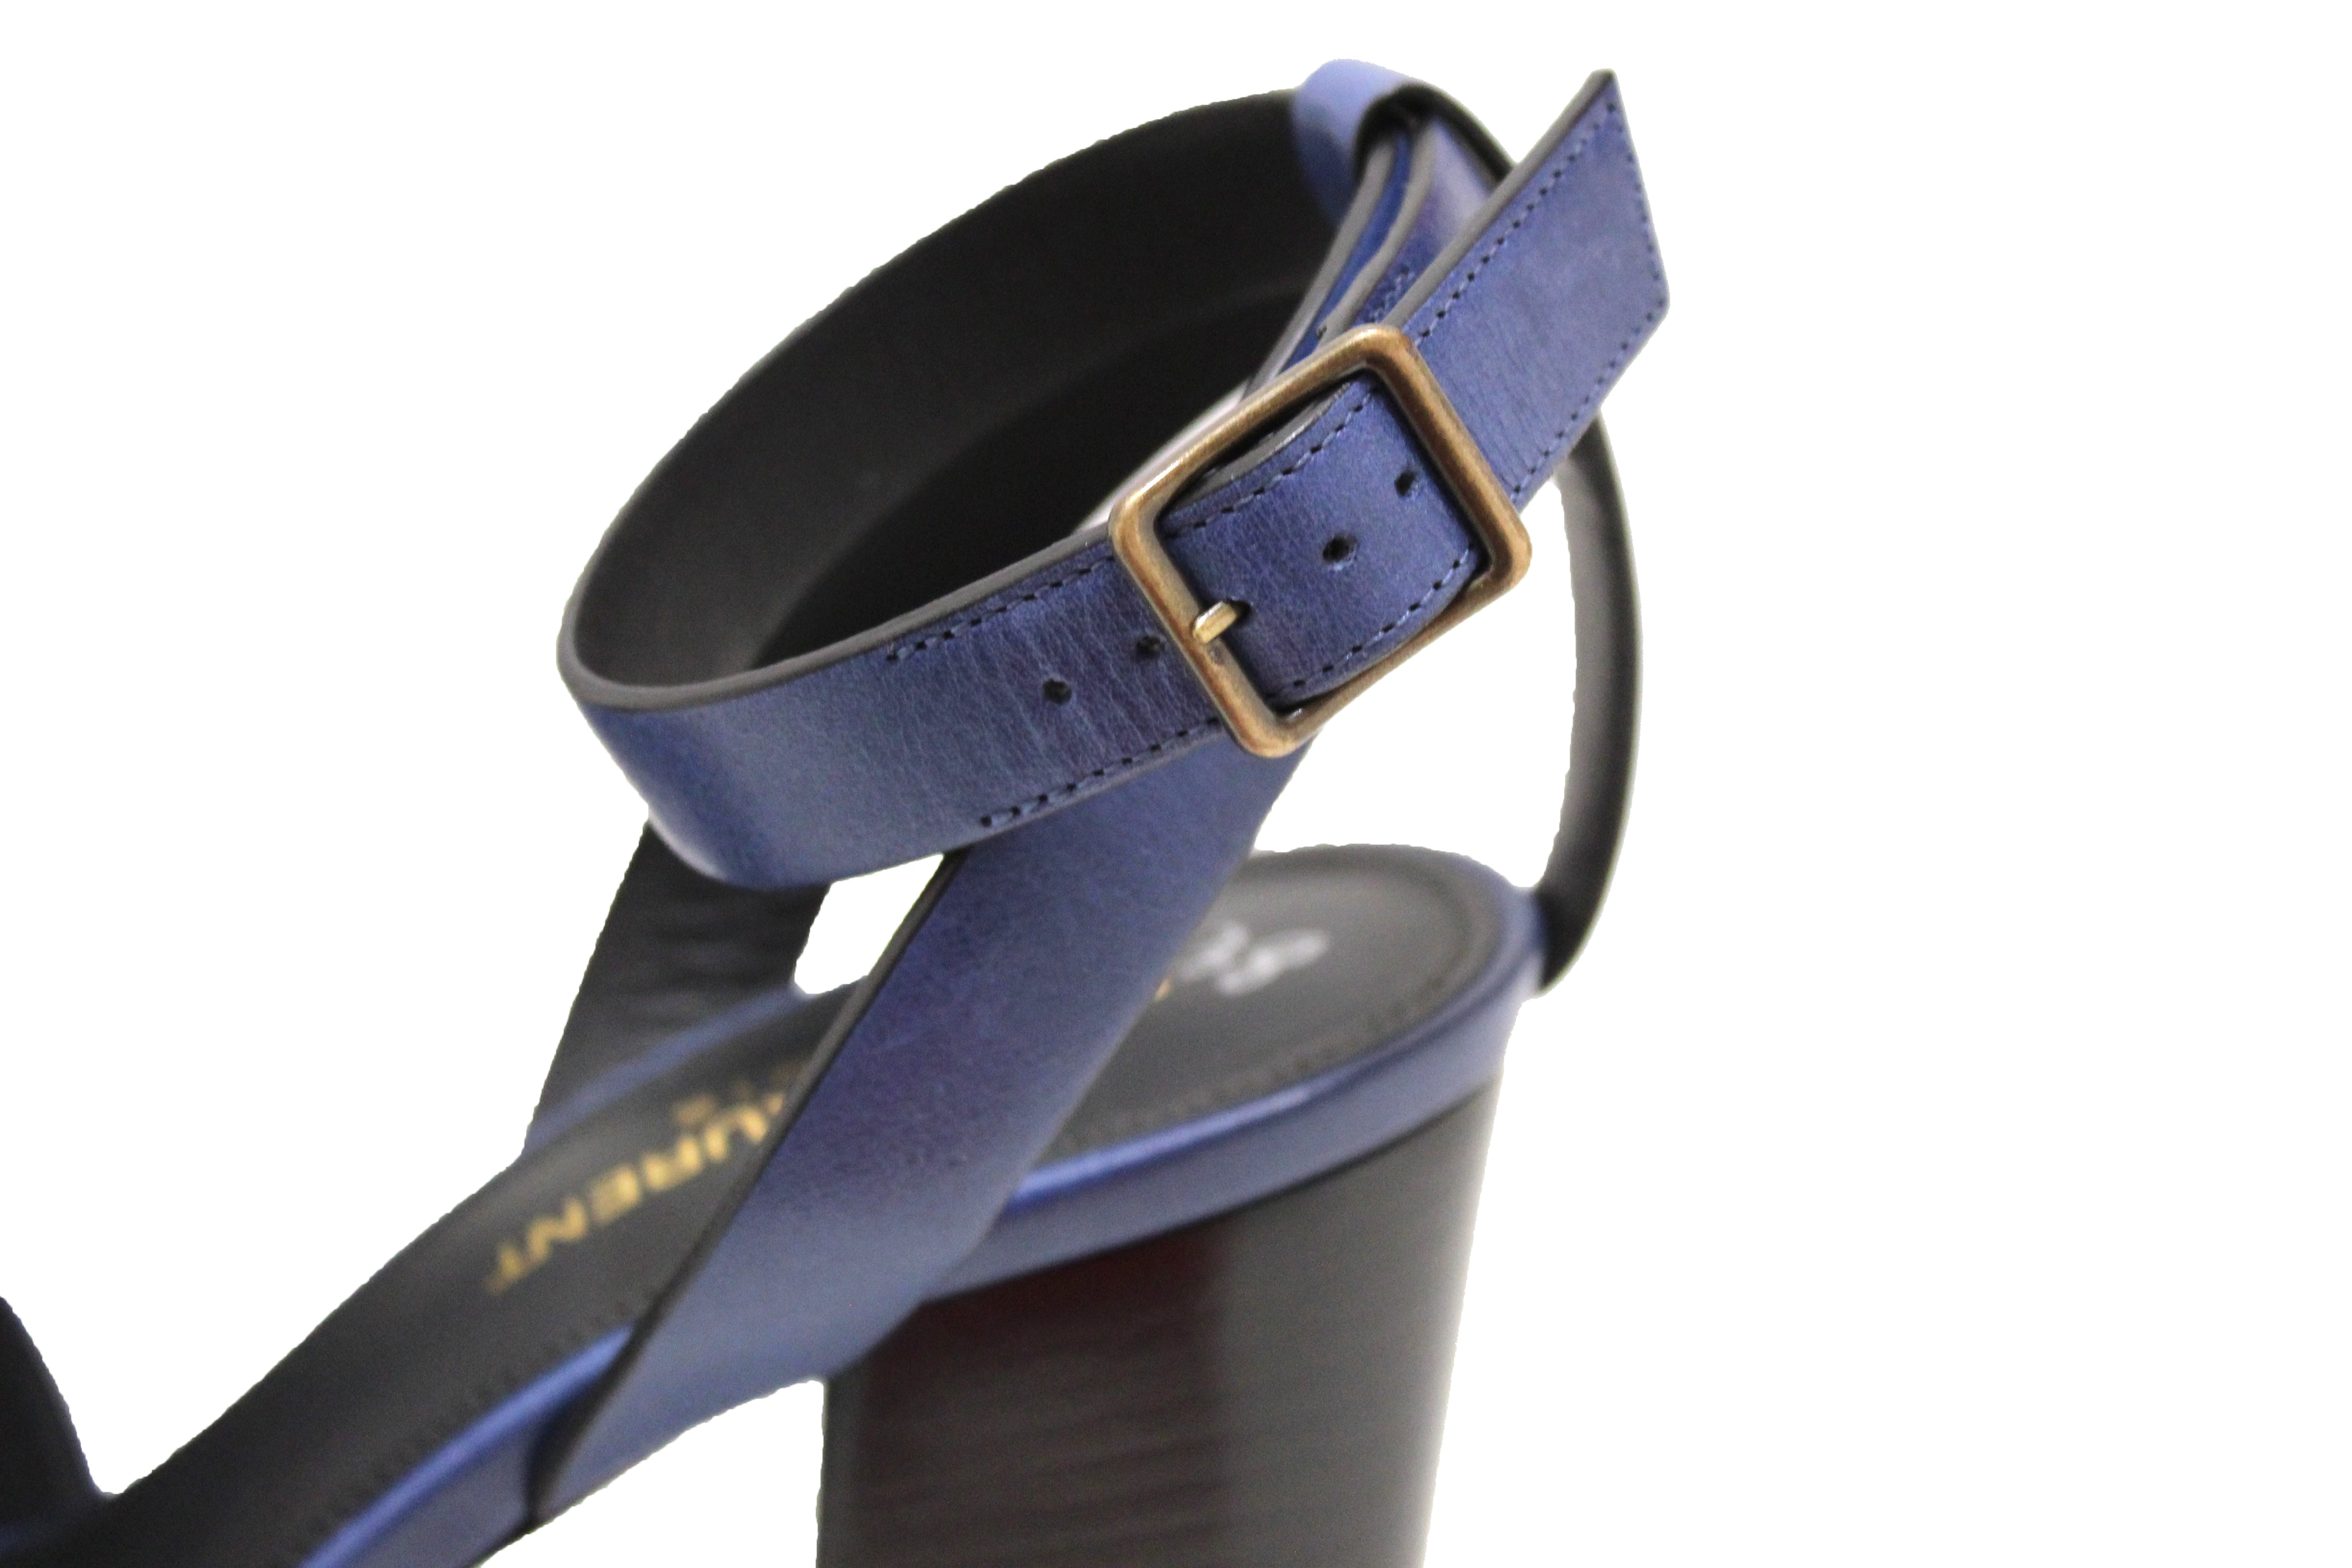 Authentic NEW Saint Laurent Blue Calfskin Leather Farrah Platform Sandals Size 36.5